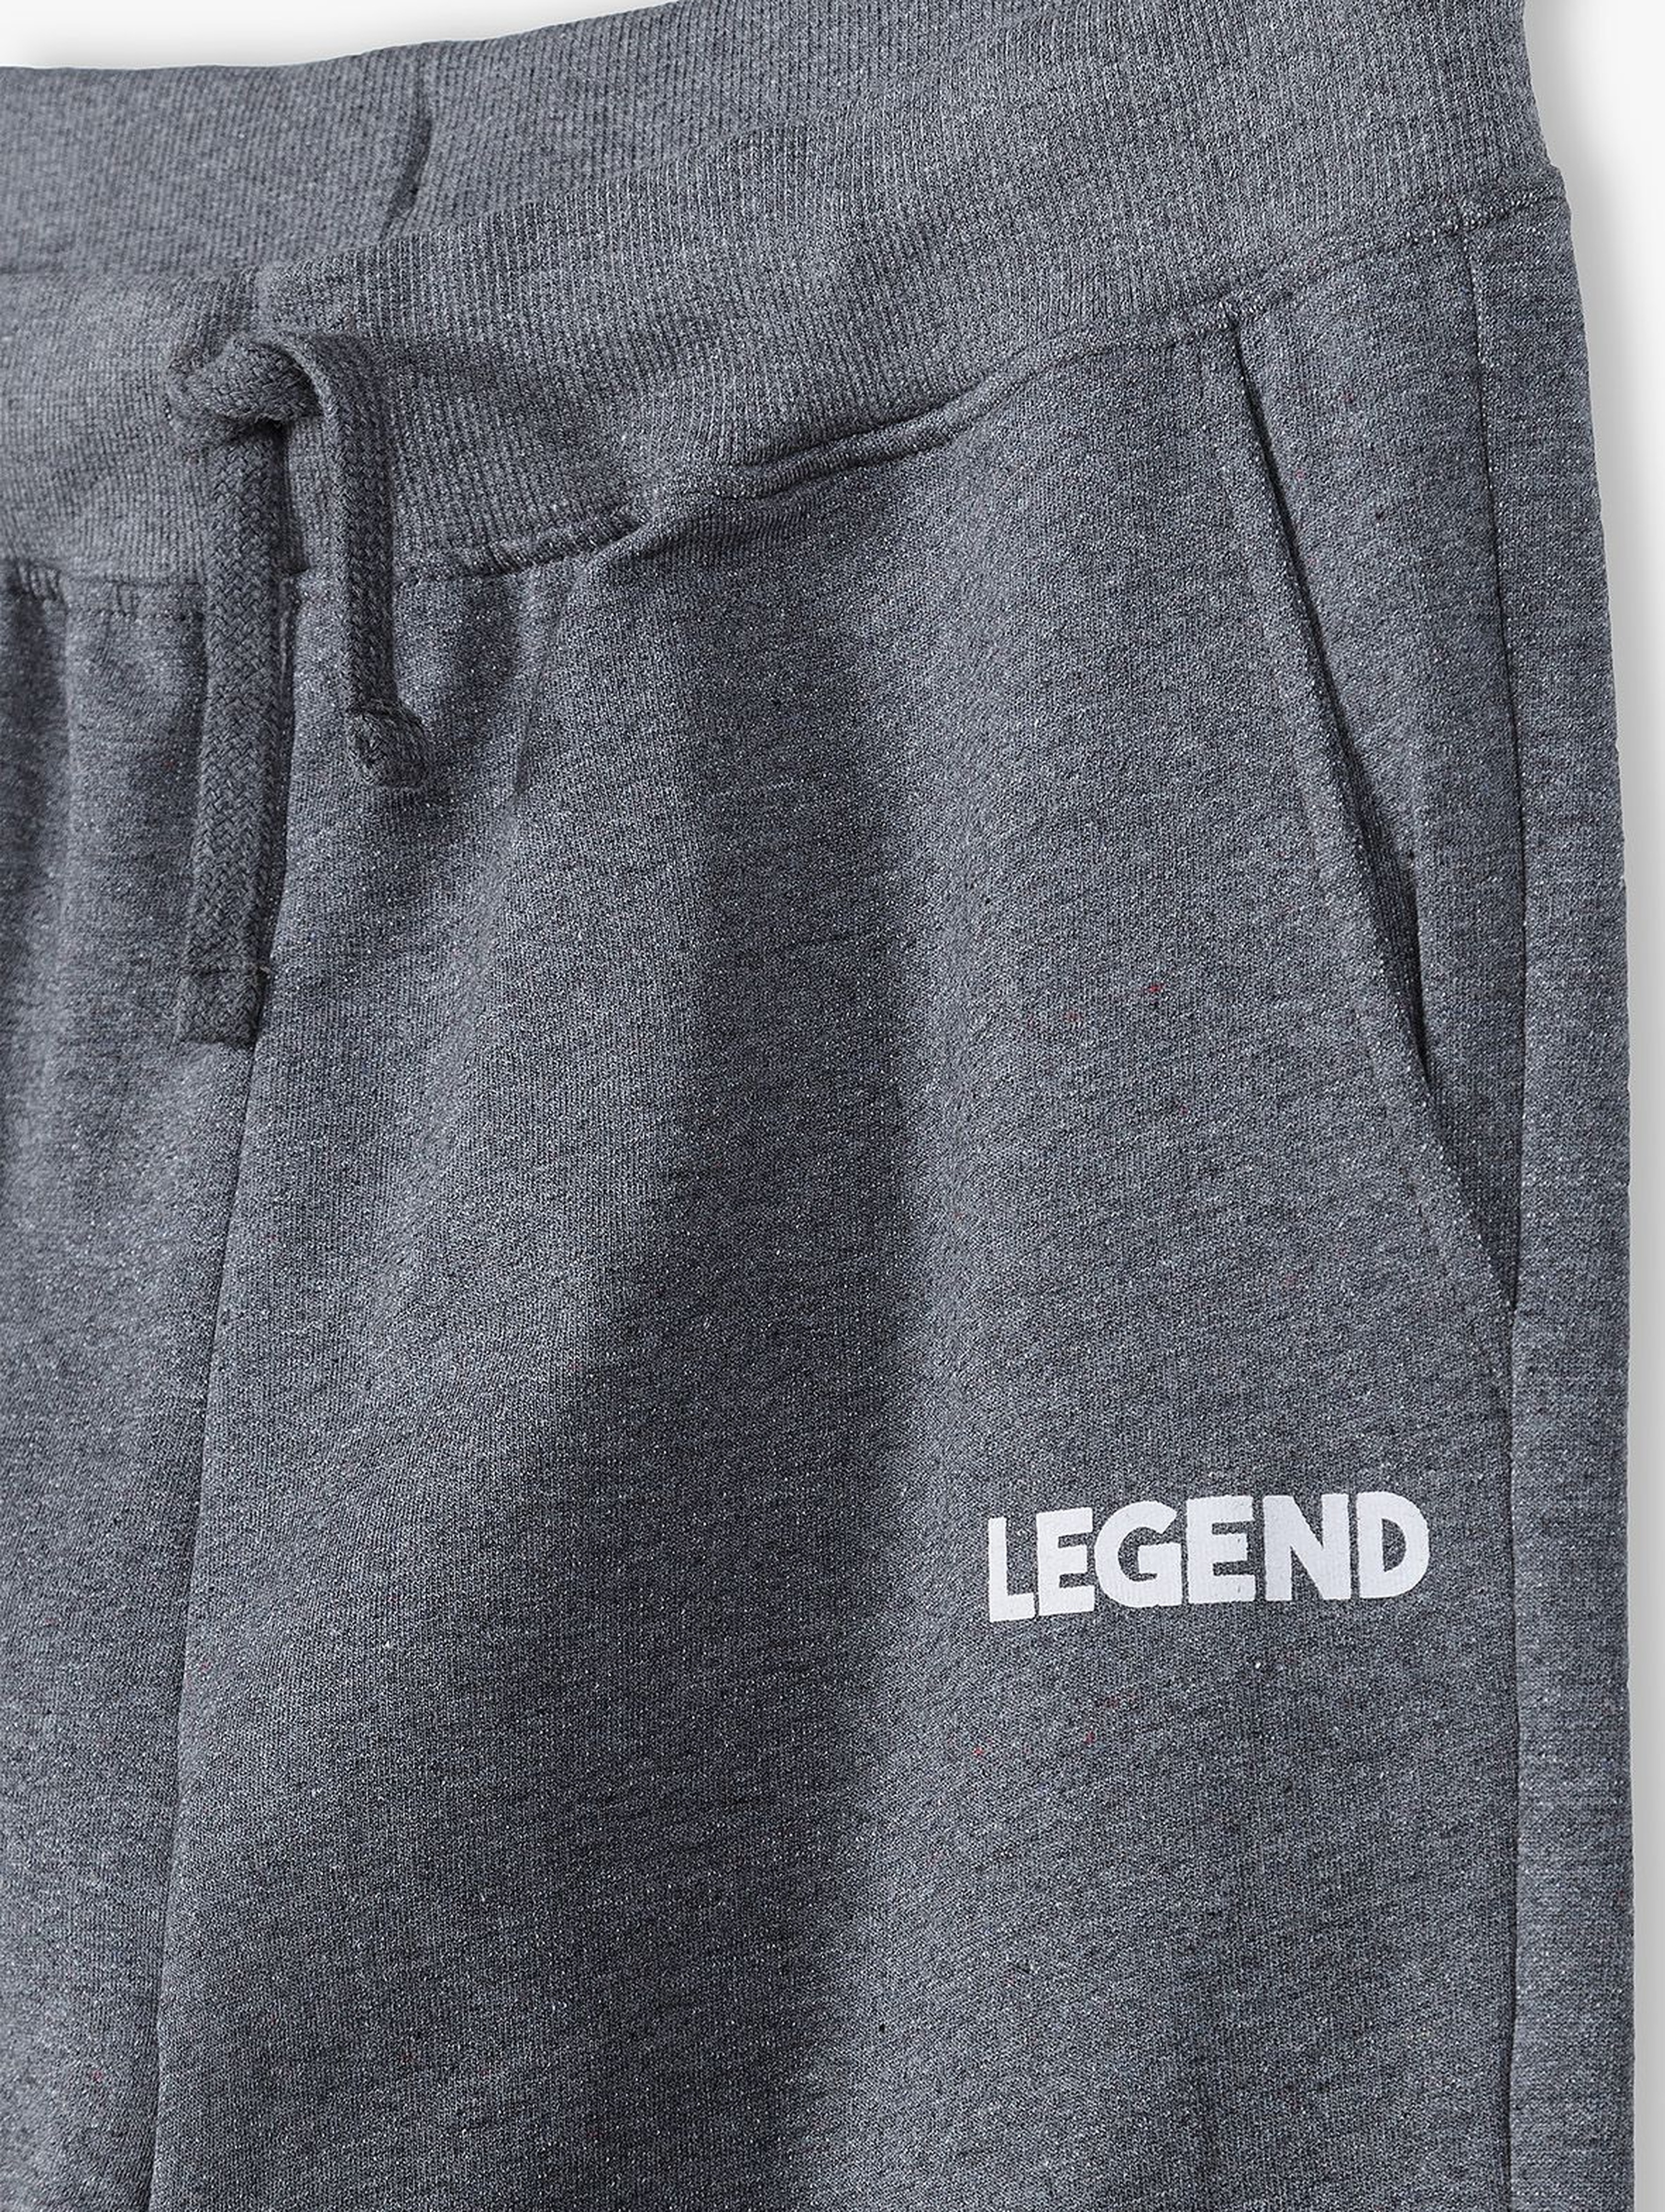 Spodnie dresowe dla mężczyzn szare- Legend- ubrania dla całej rodziny